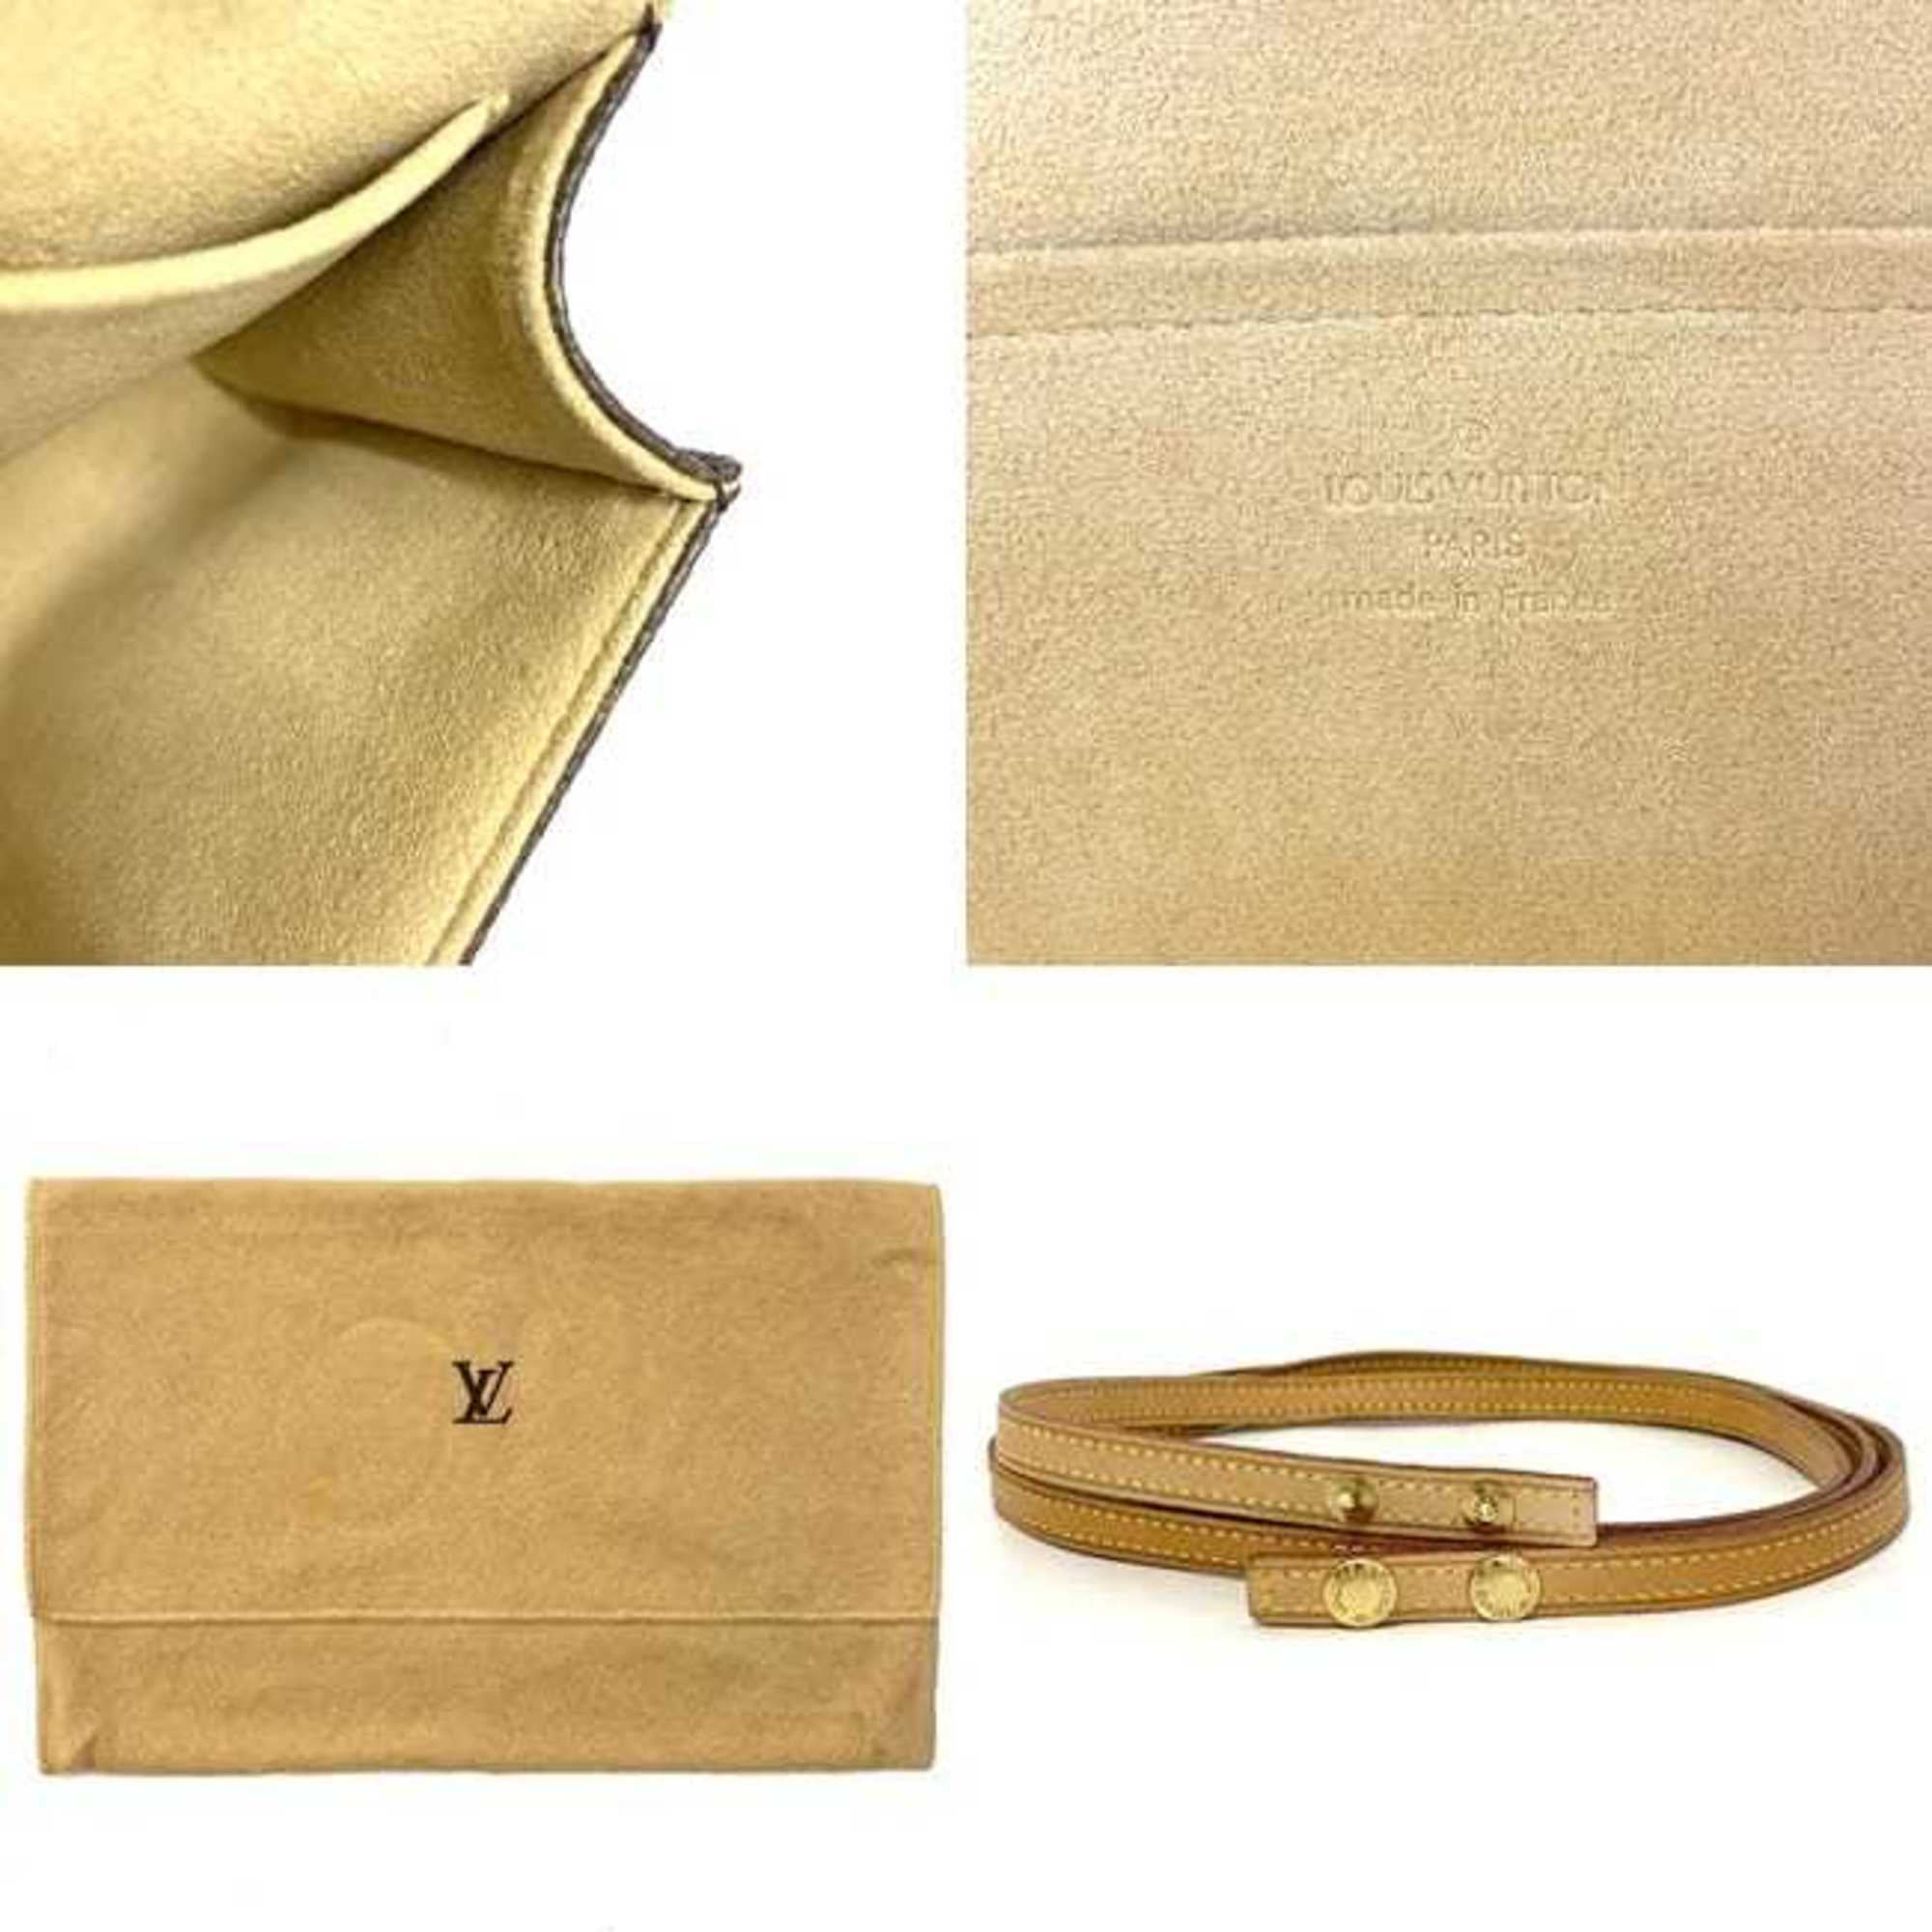 Pochette Métis bag in brown monogram canvas Louis Vuitton - Second